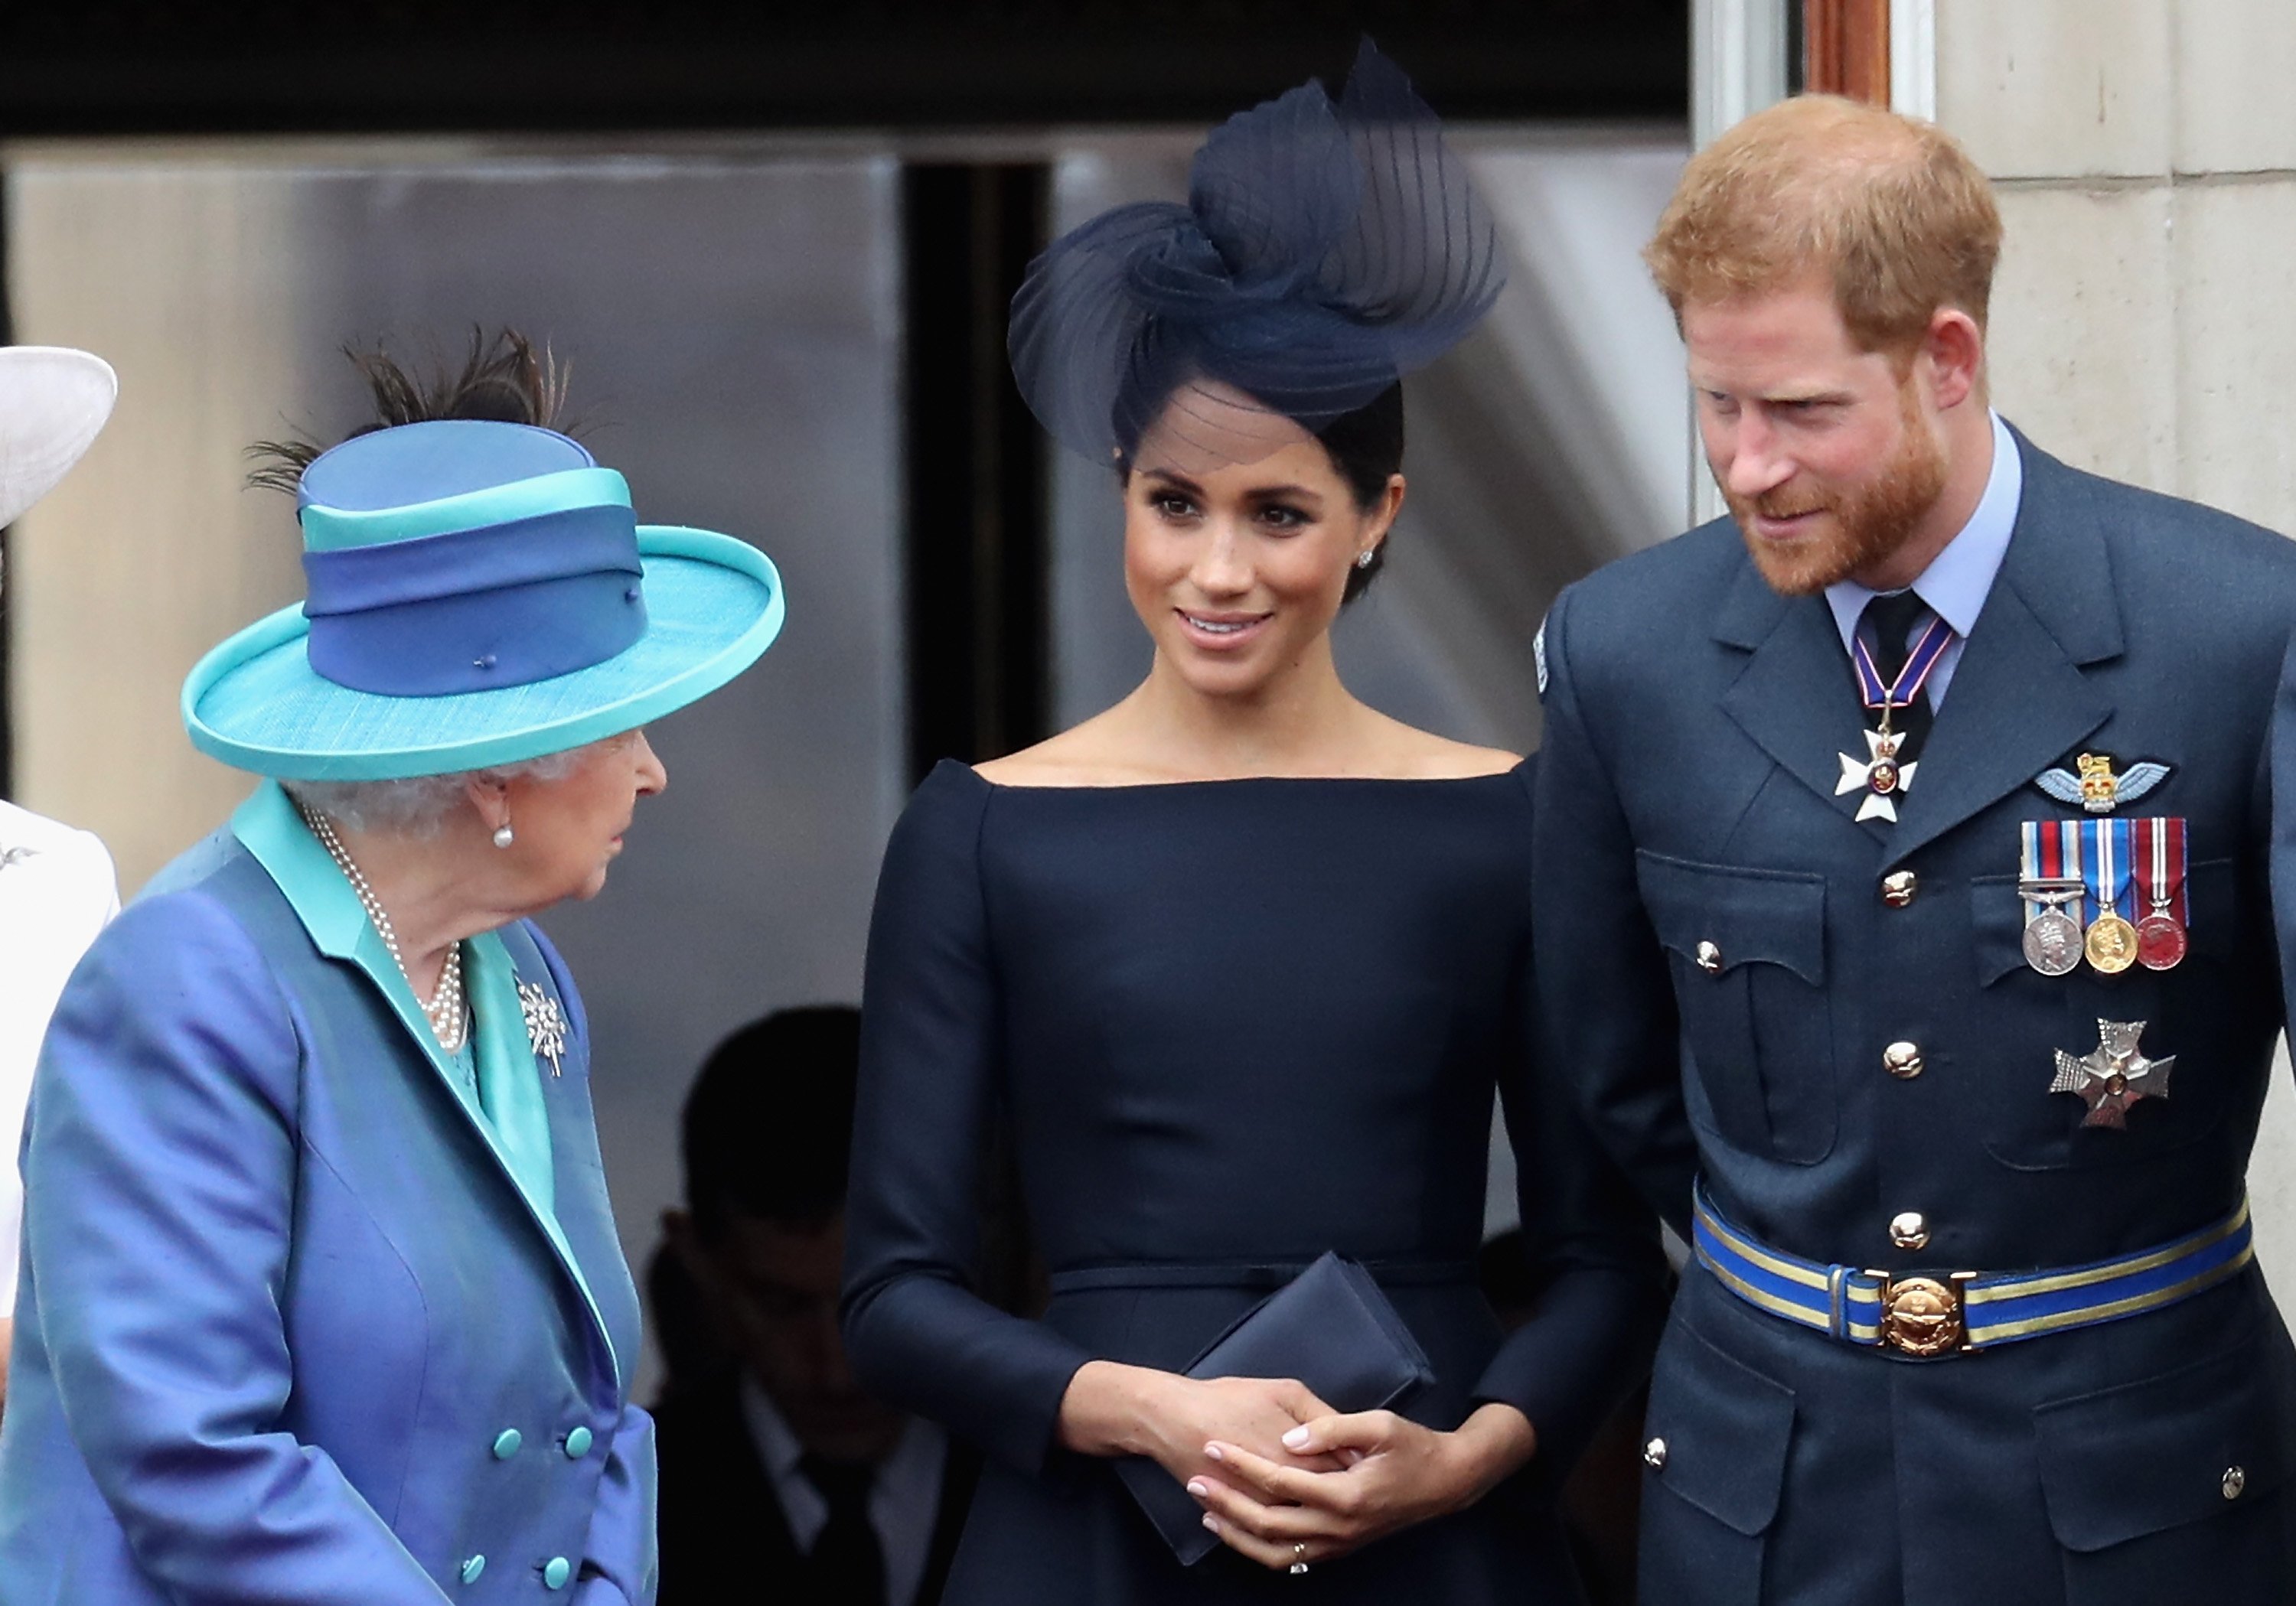 La reine Elizabeth II, Meghan Markle et le prince Harry photographiés en train de regarder le défilé aérien de la RAF sur le balcon du palais de Buckingham, le 10 juillet 2018 à Londres, en Angleterre. │ Source : Getty Images